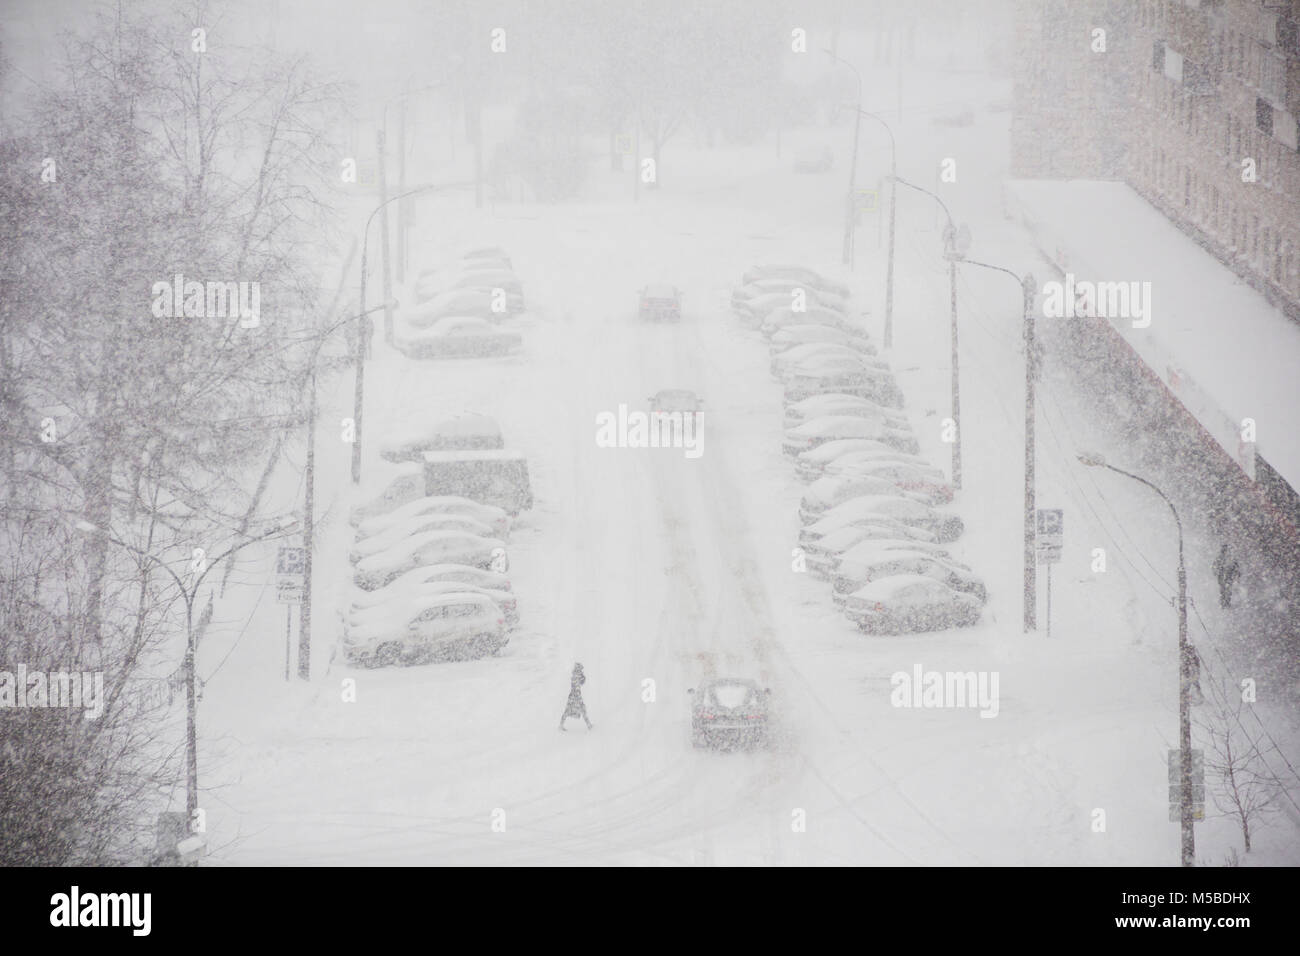 Panorama urbano de la ciudad en tiempo de invierno en la tormenta de nieve con algunas personas, snowcovered automóviles en una carretera, quitanieves, ambulancia Foto de stock